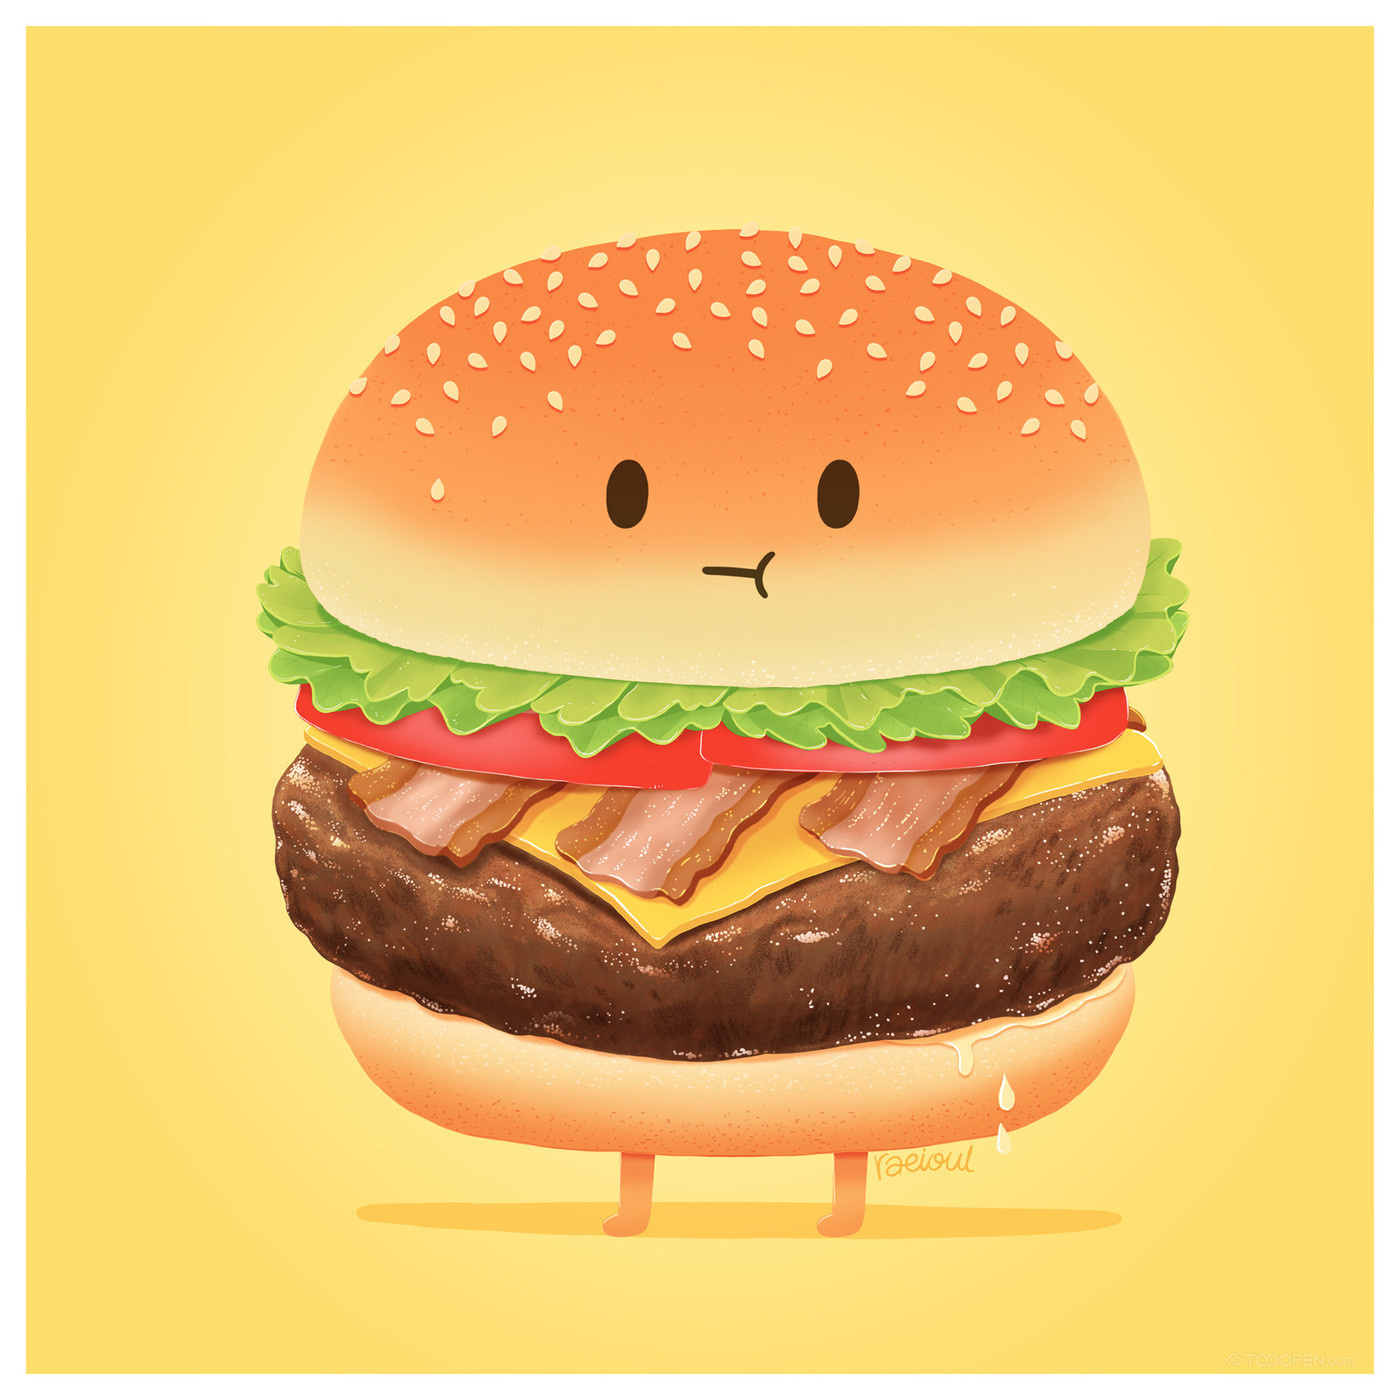 彩色手绘汉堡美食元素图片素材免费下载 - 觅知网